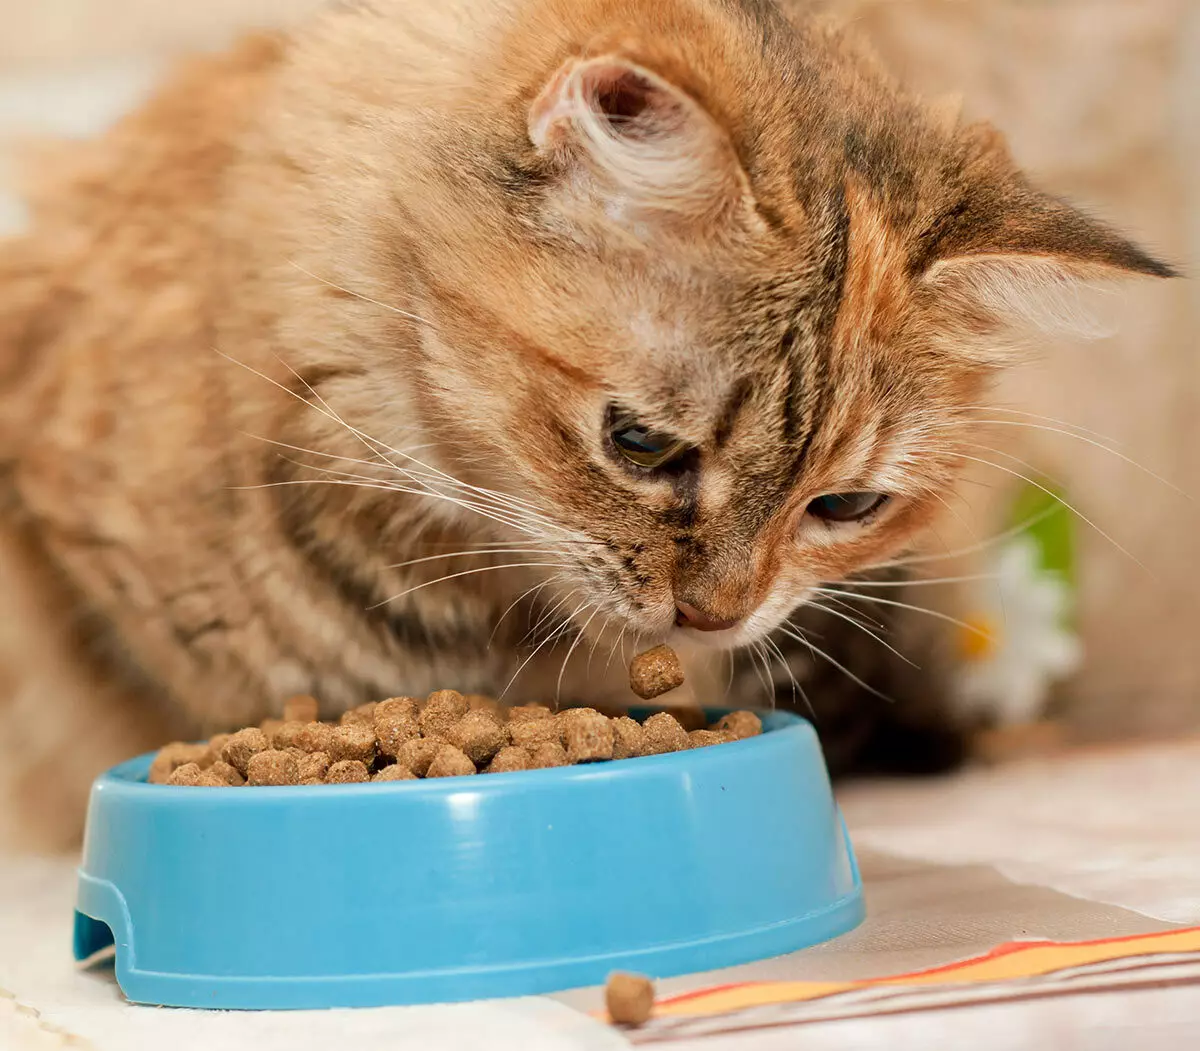 Feed do gato do gato feliz: a composição do alimento molhado e seco para gatinhos e gatos esterilizados, alimento para gatos castrados. Avaliações 22070_3